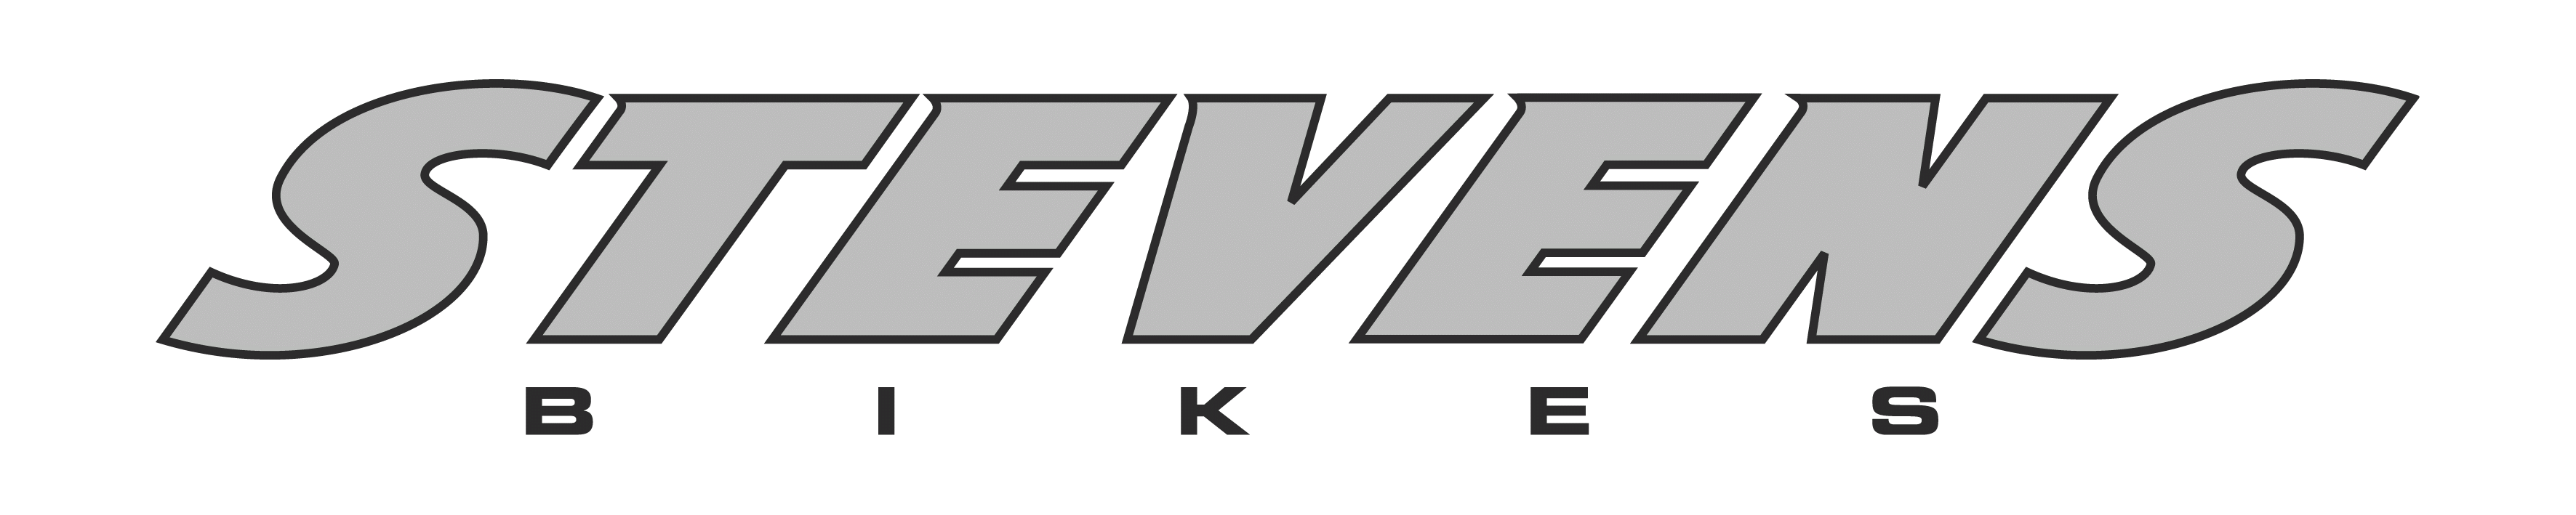 Stevens Logo - Stevens bikes logo.gif